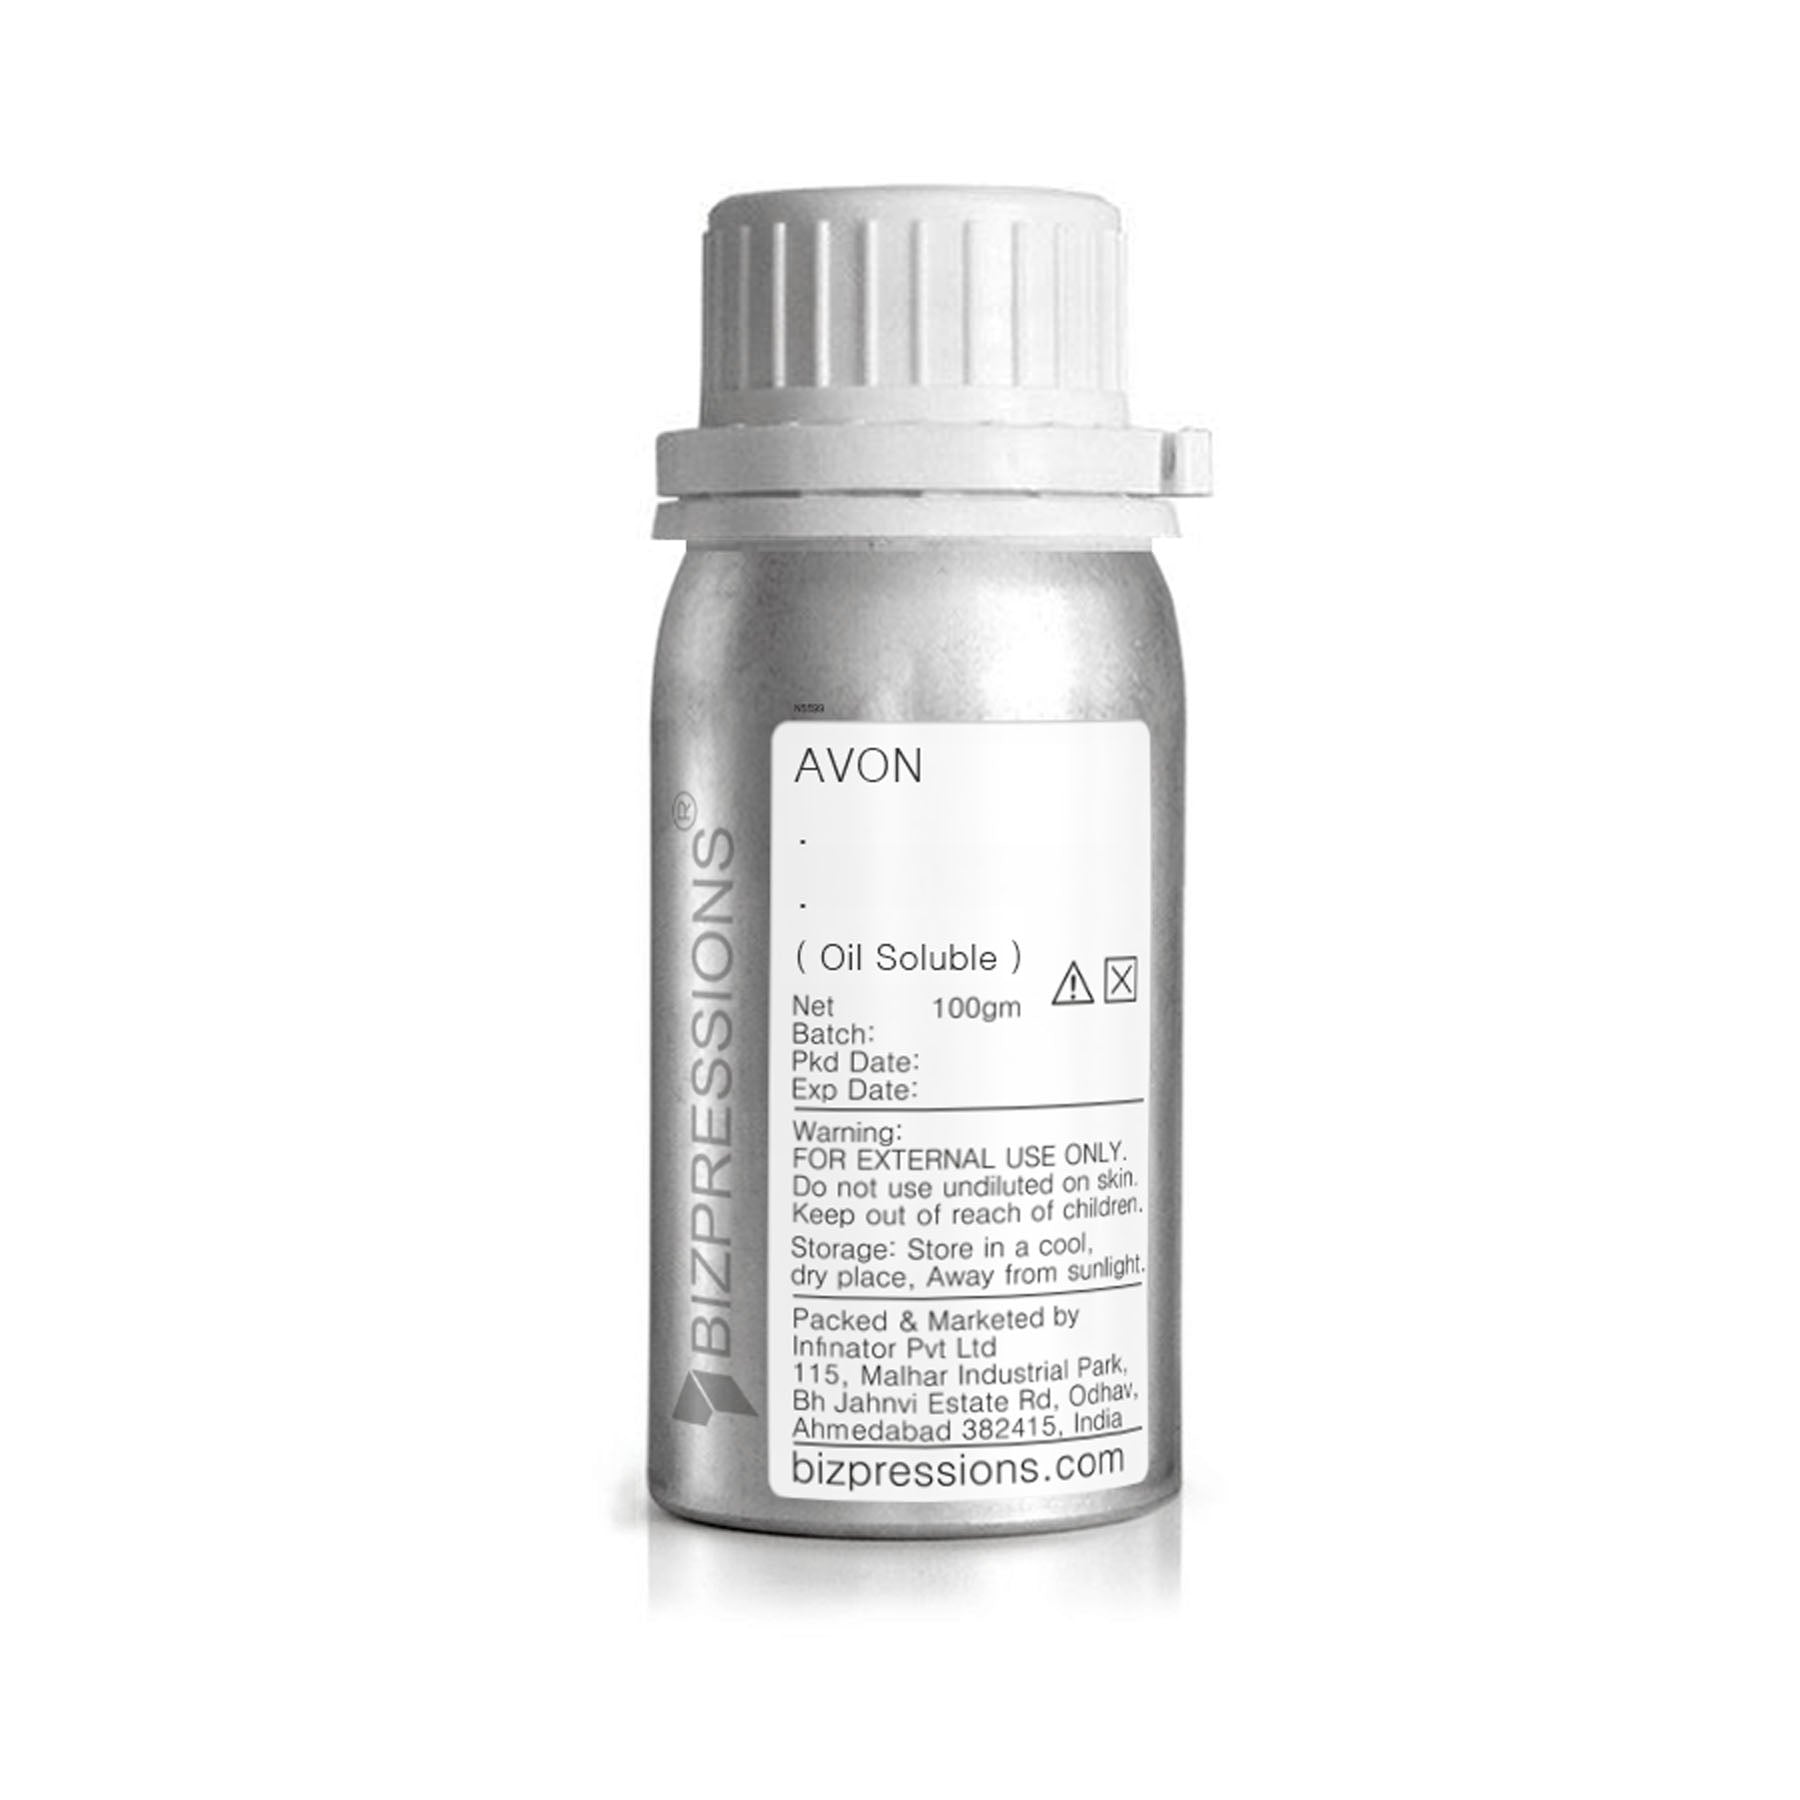 AVON - Fragrance ( Oil Soluble ) - 100 gm